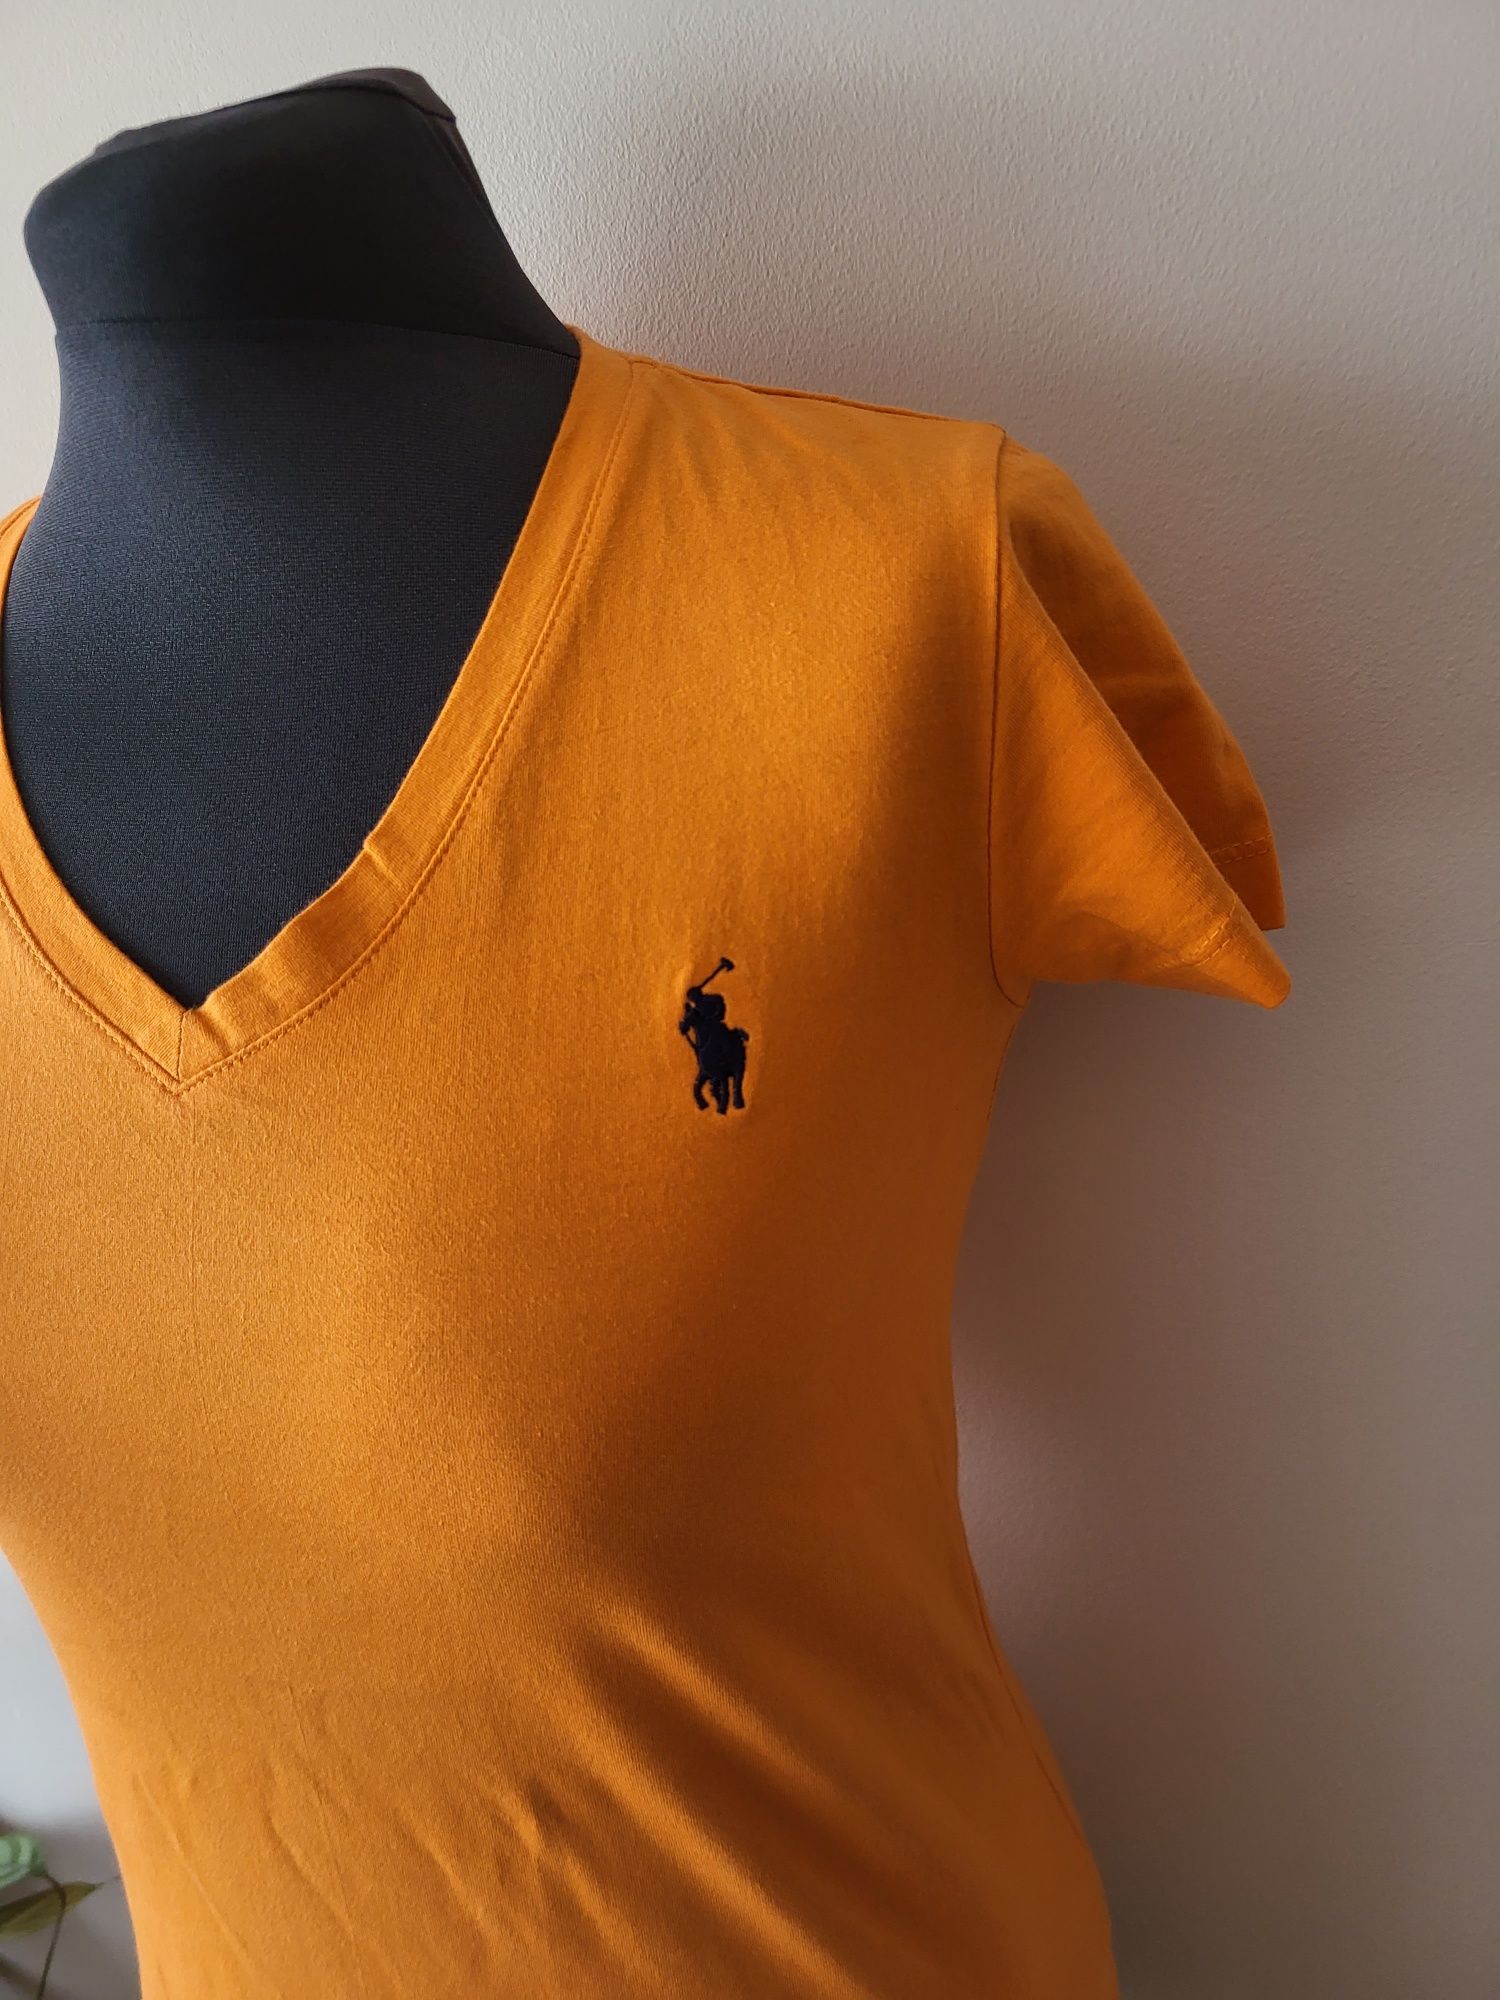 Pomarańczowa koszulka Ralph Lauren Rozmiar M